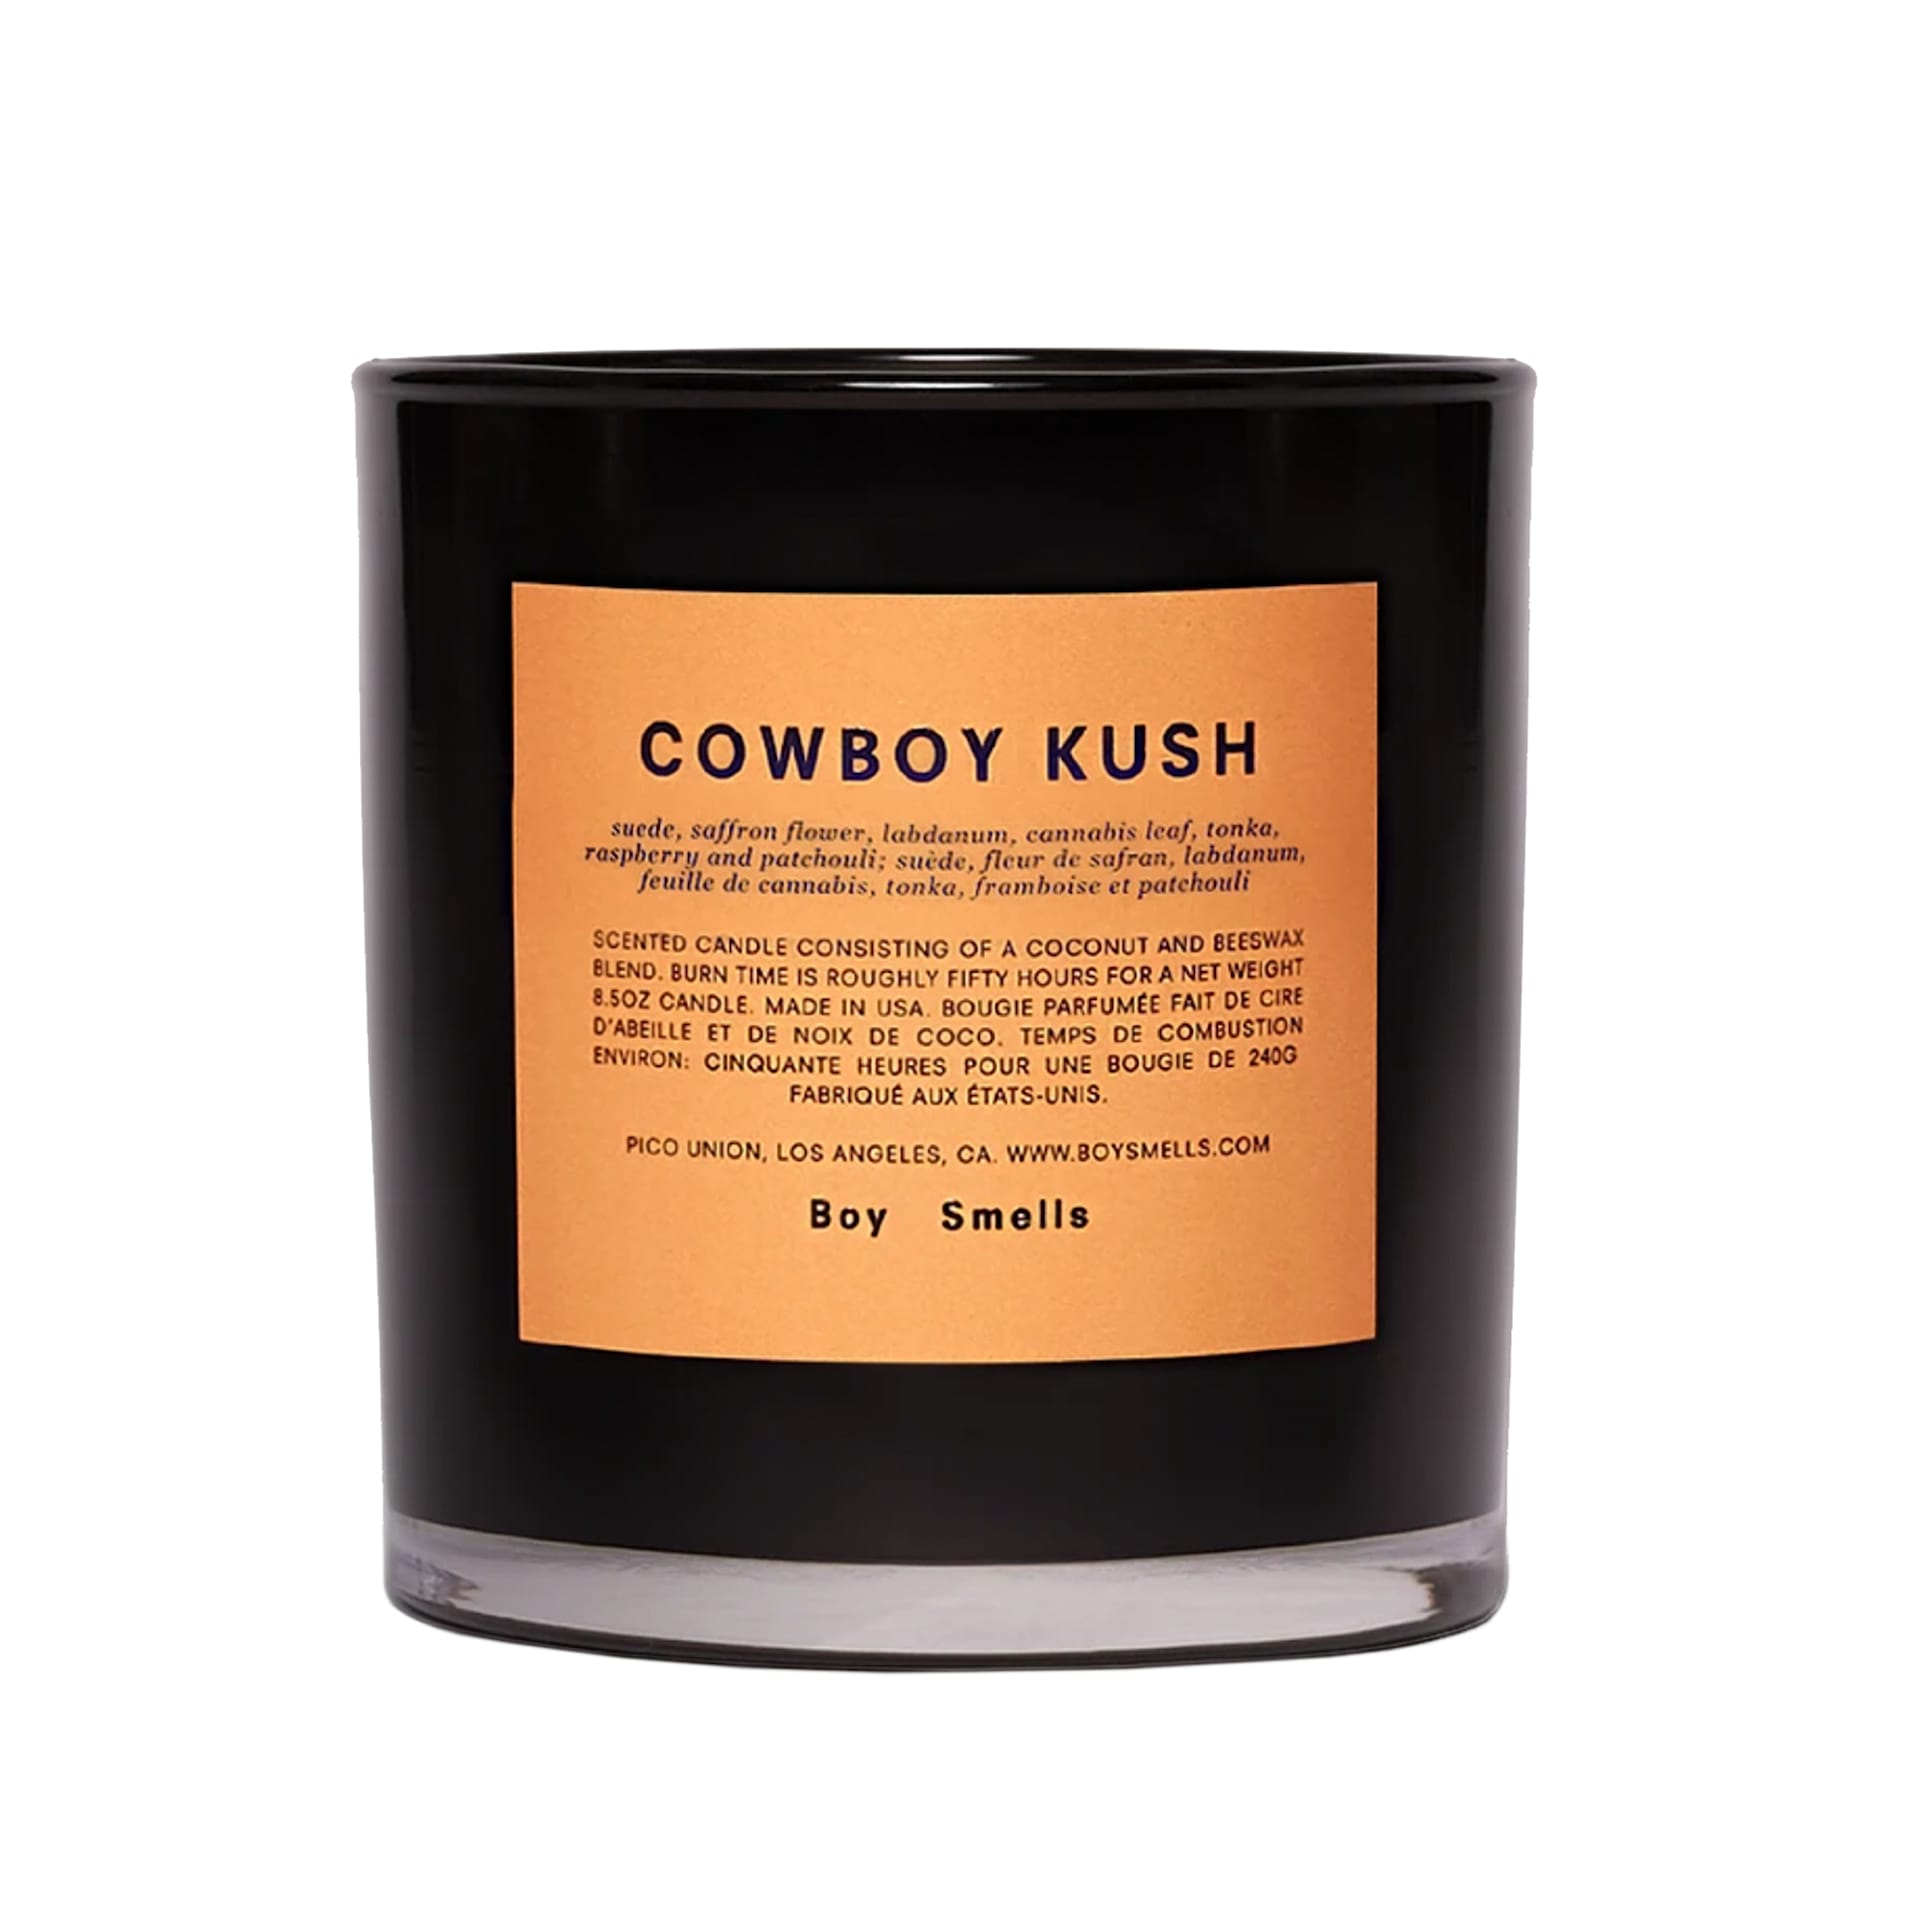 Cowboy Kush Scented Candle - Boy Smells - NO GA